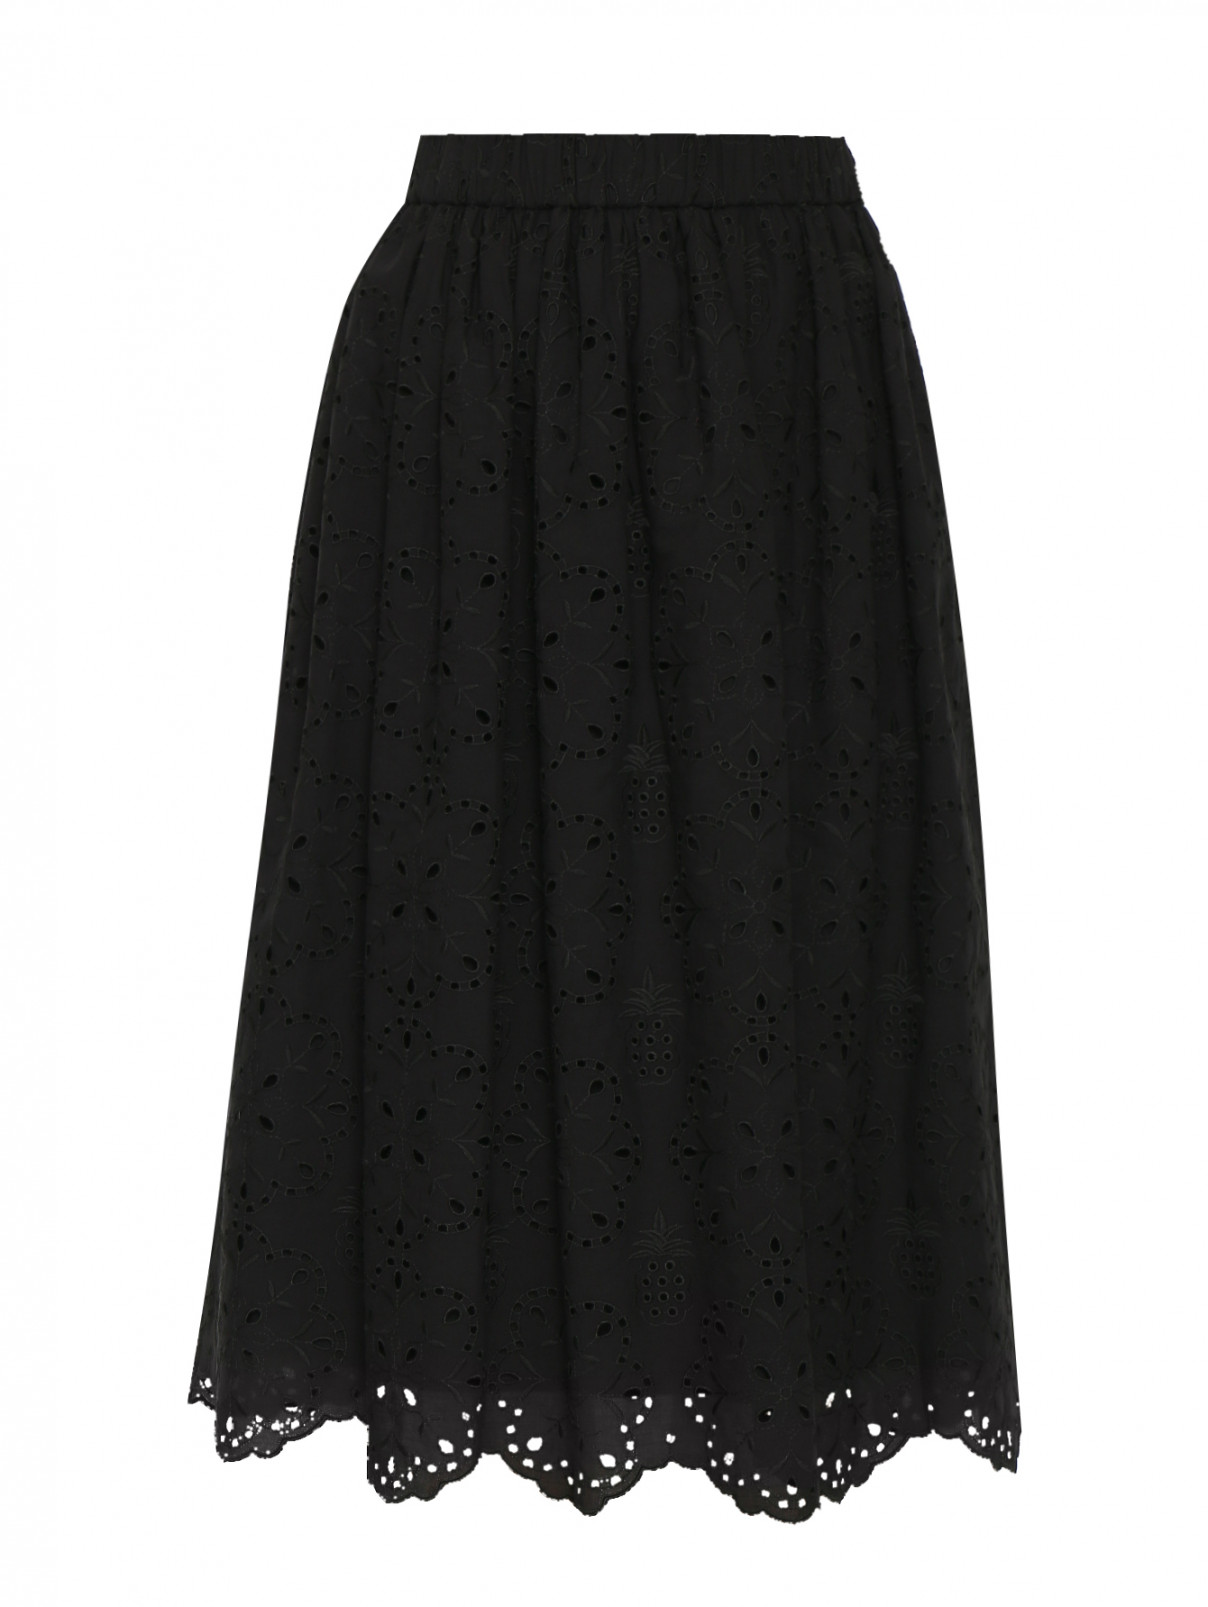 юбка хлопковая, на резинке Vivetta  –  Общий вид  – Цвет:  Черный